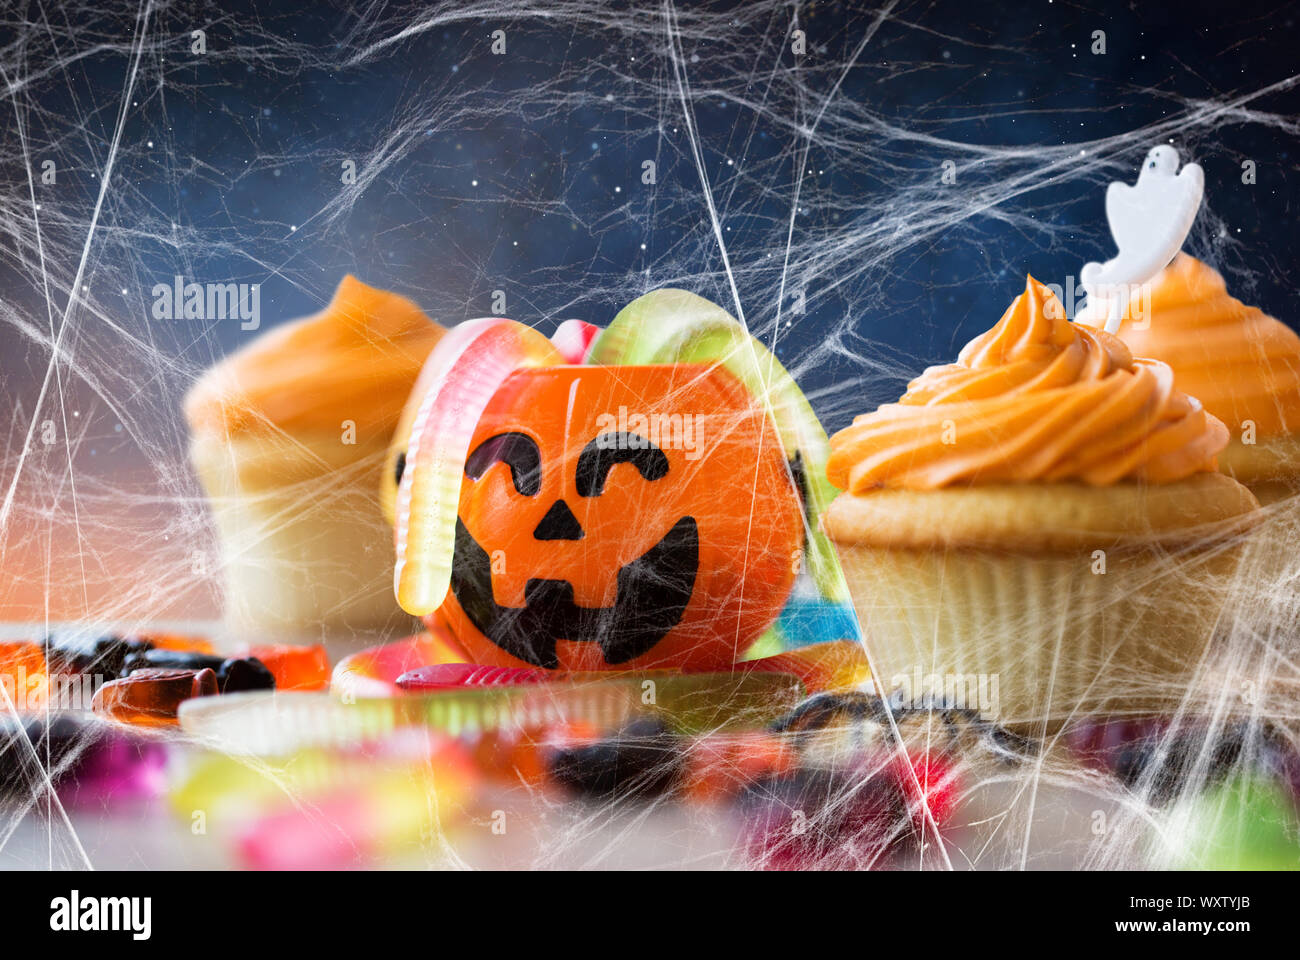 Essen, Backen und Urlaub Konzept - kleine Kuchen oder Muffins mit halloween party Dekorationen, Jack-o-Lantern, Jelly Wurm Bonbons und Spiderweb auf Holz- t Stockfoto